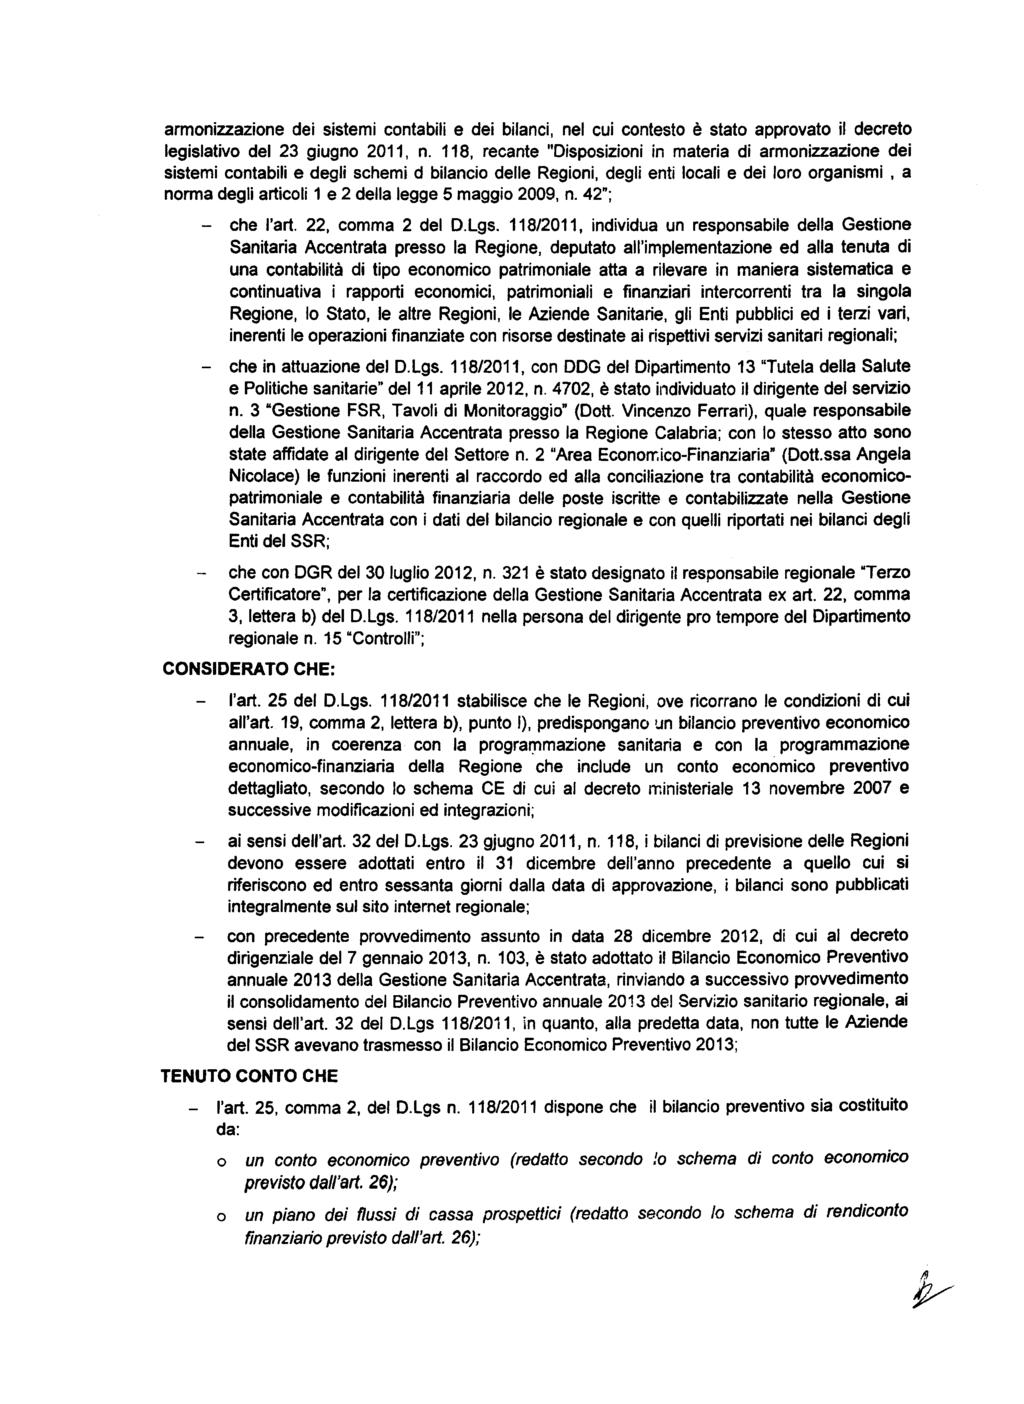 armnizzazine dei sistemi cntabili e dei bilanci, nel cui cntest è stat apprvat il decret legislativ del 23 giugn 2011, n.